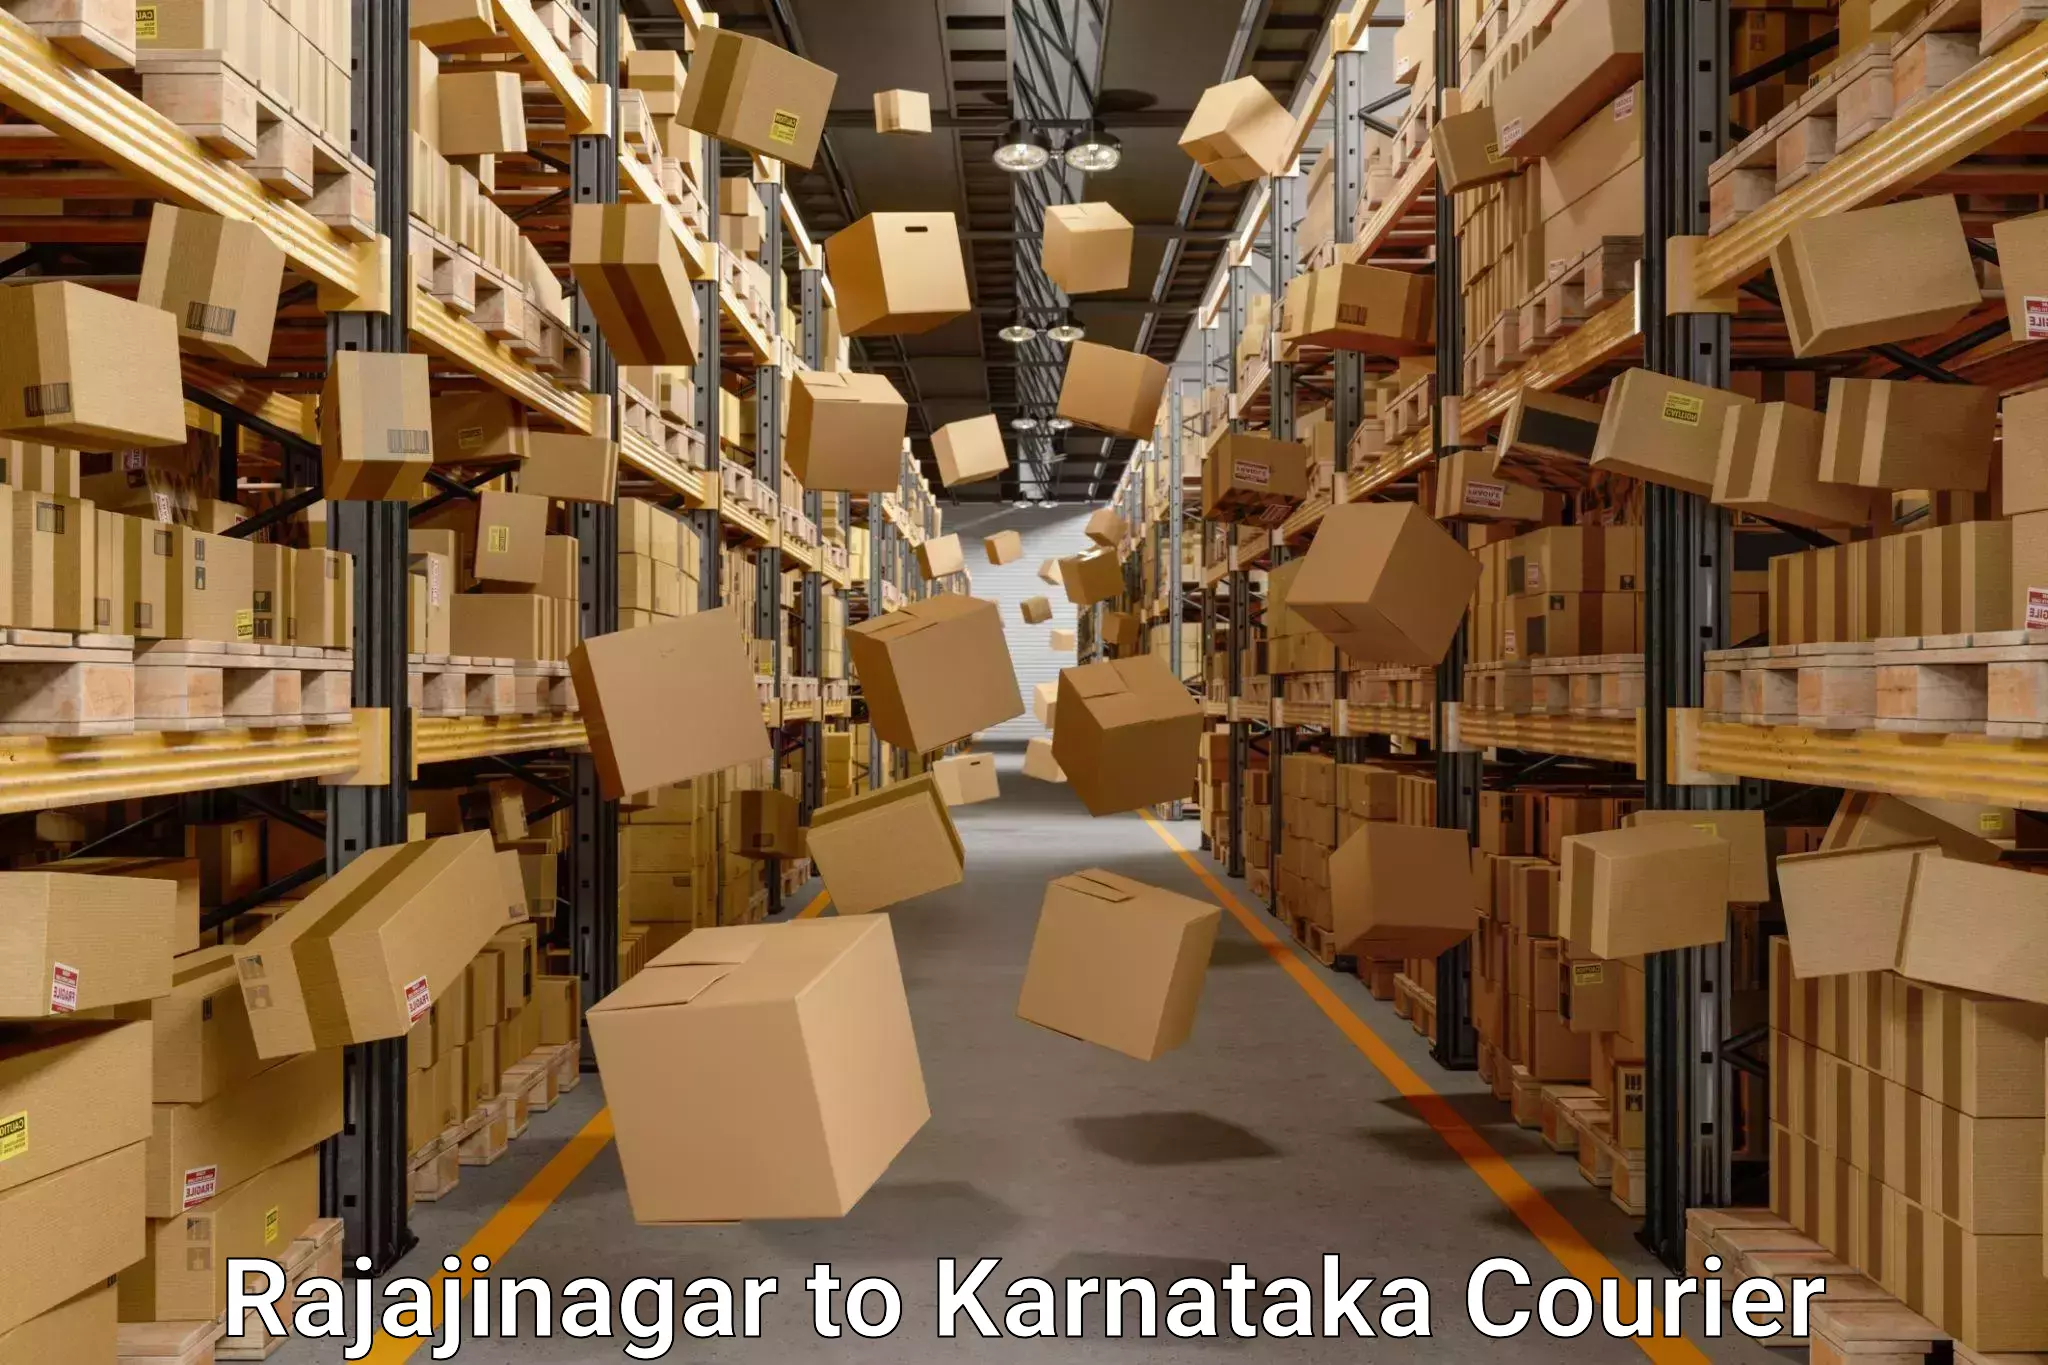 Furniture moving experts in Rajajinagar to Karnataka